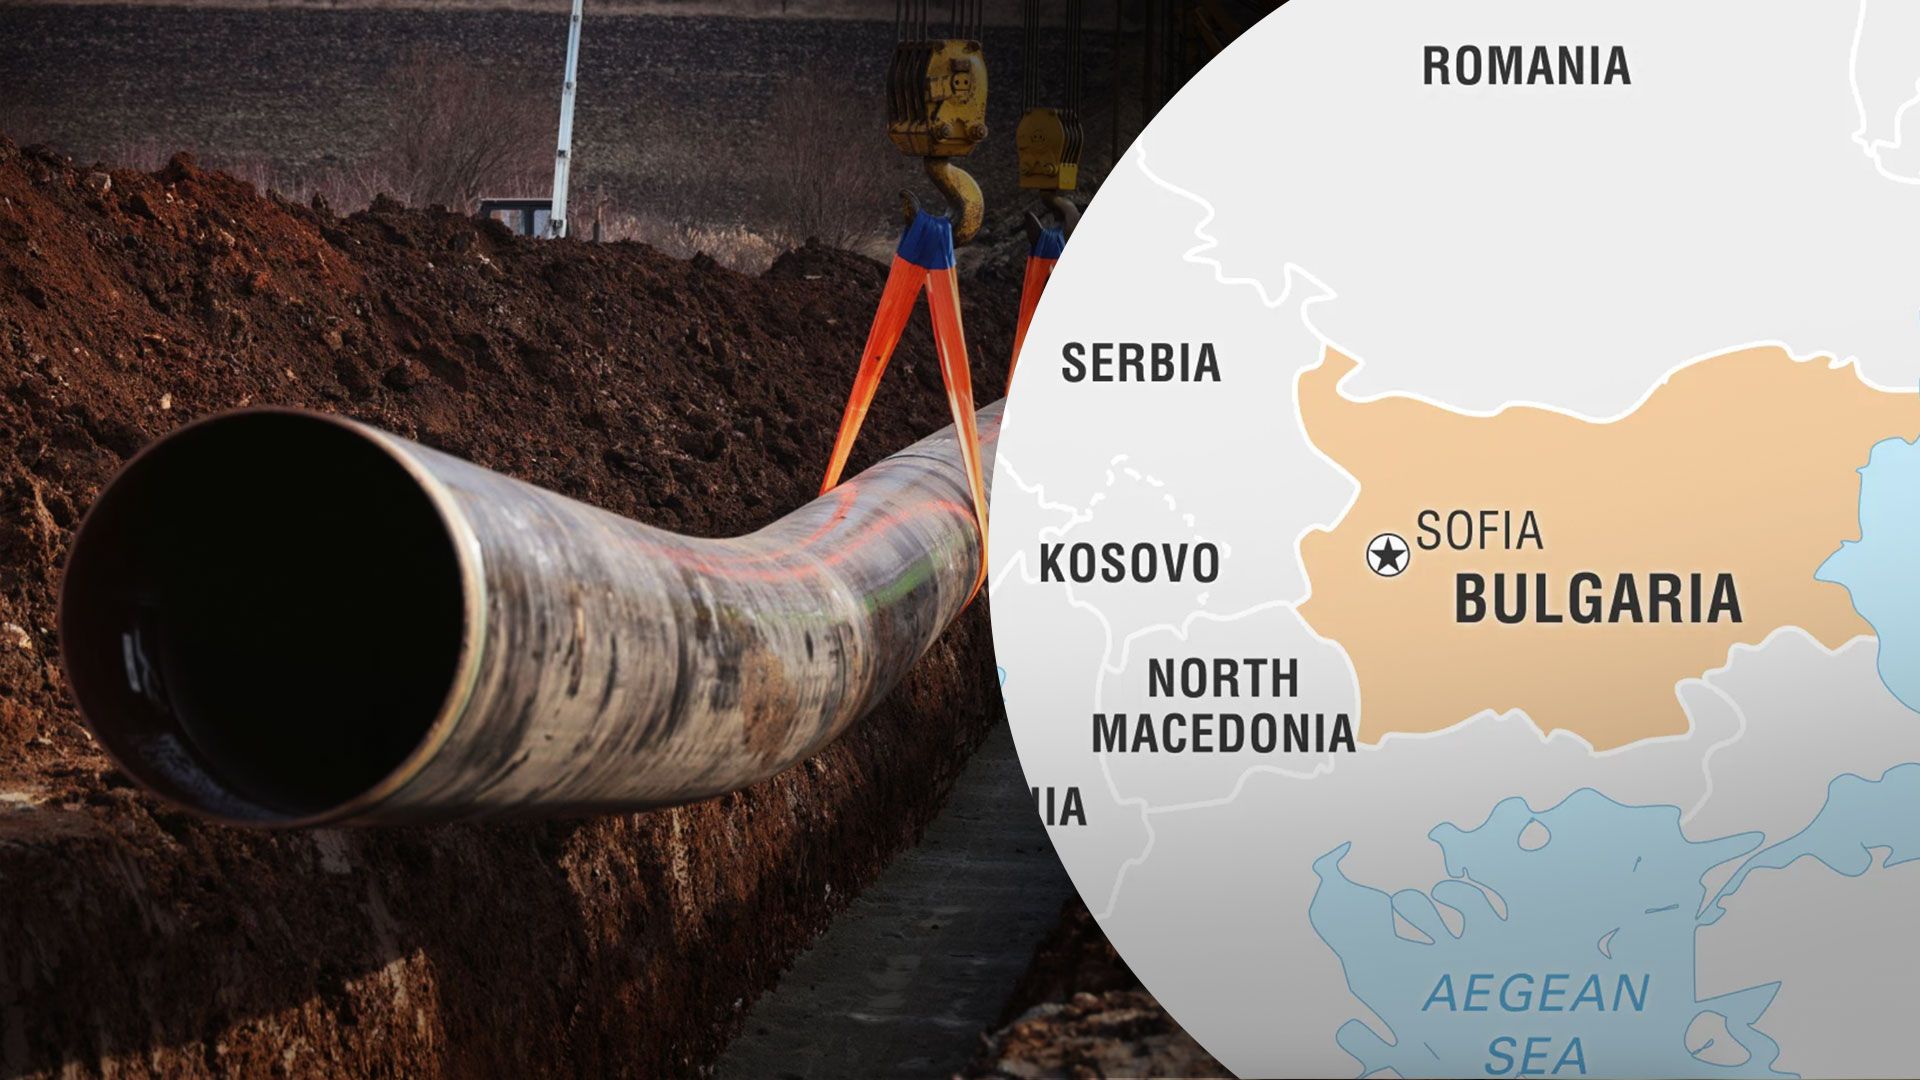 Начато строительство газопровода из Болгарии в Сербию